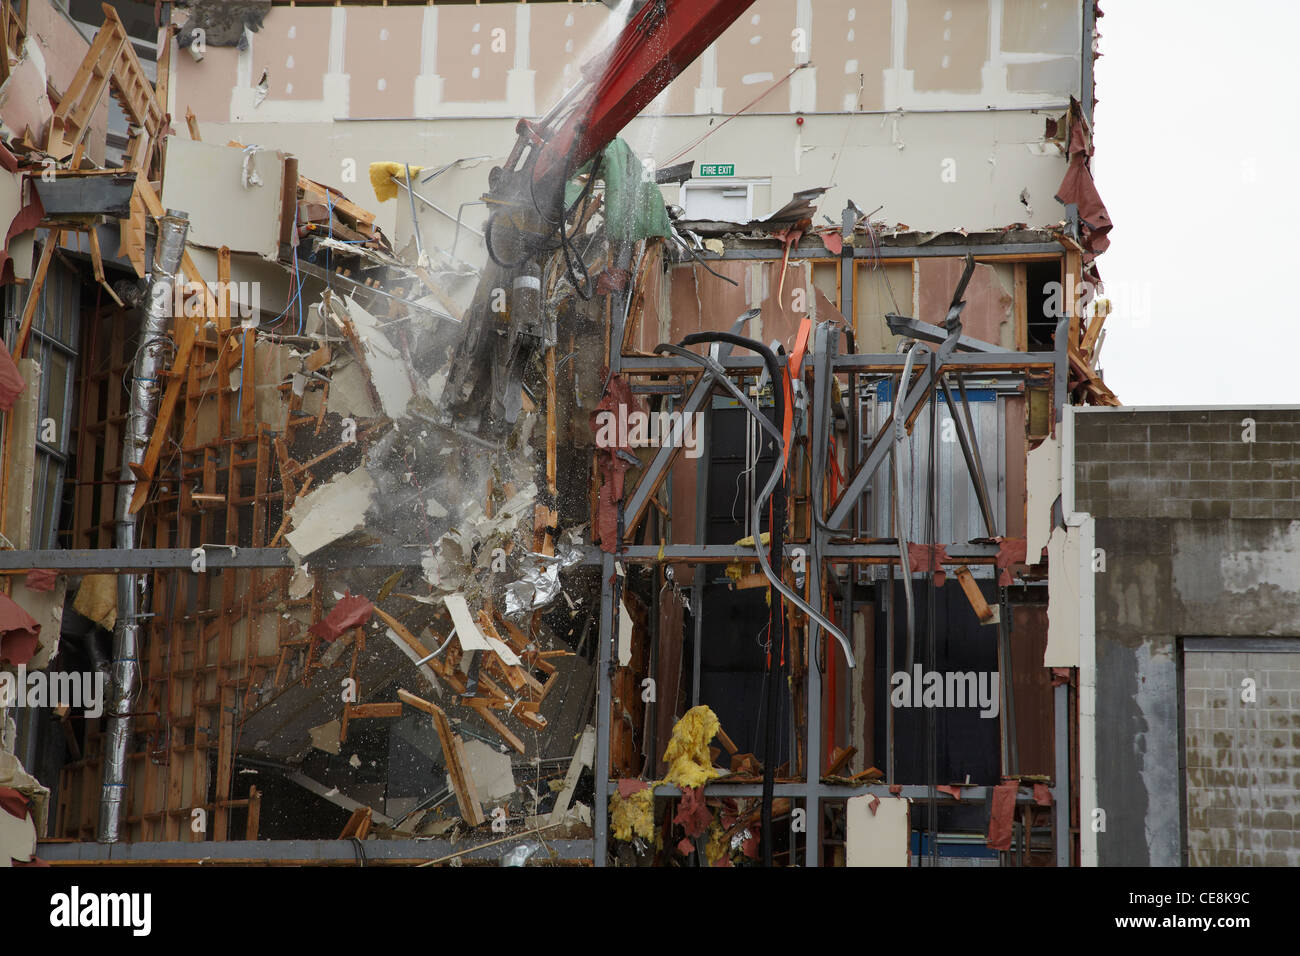 Bâtiment endommagé par le tremblement de terre, d'être démoli, Colombo St, Christchurch, Canterbury, île du Sud, Nouvelle-Zélande Banque D'Images